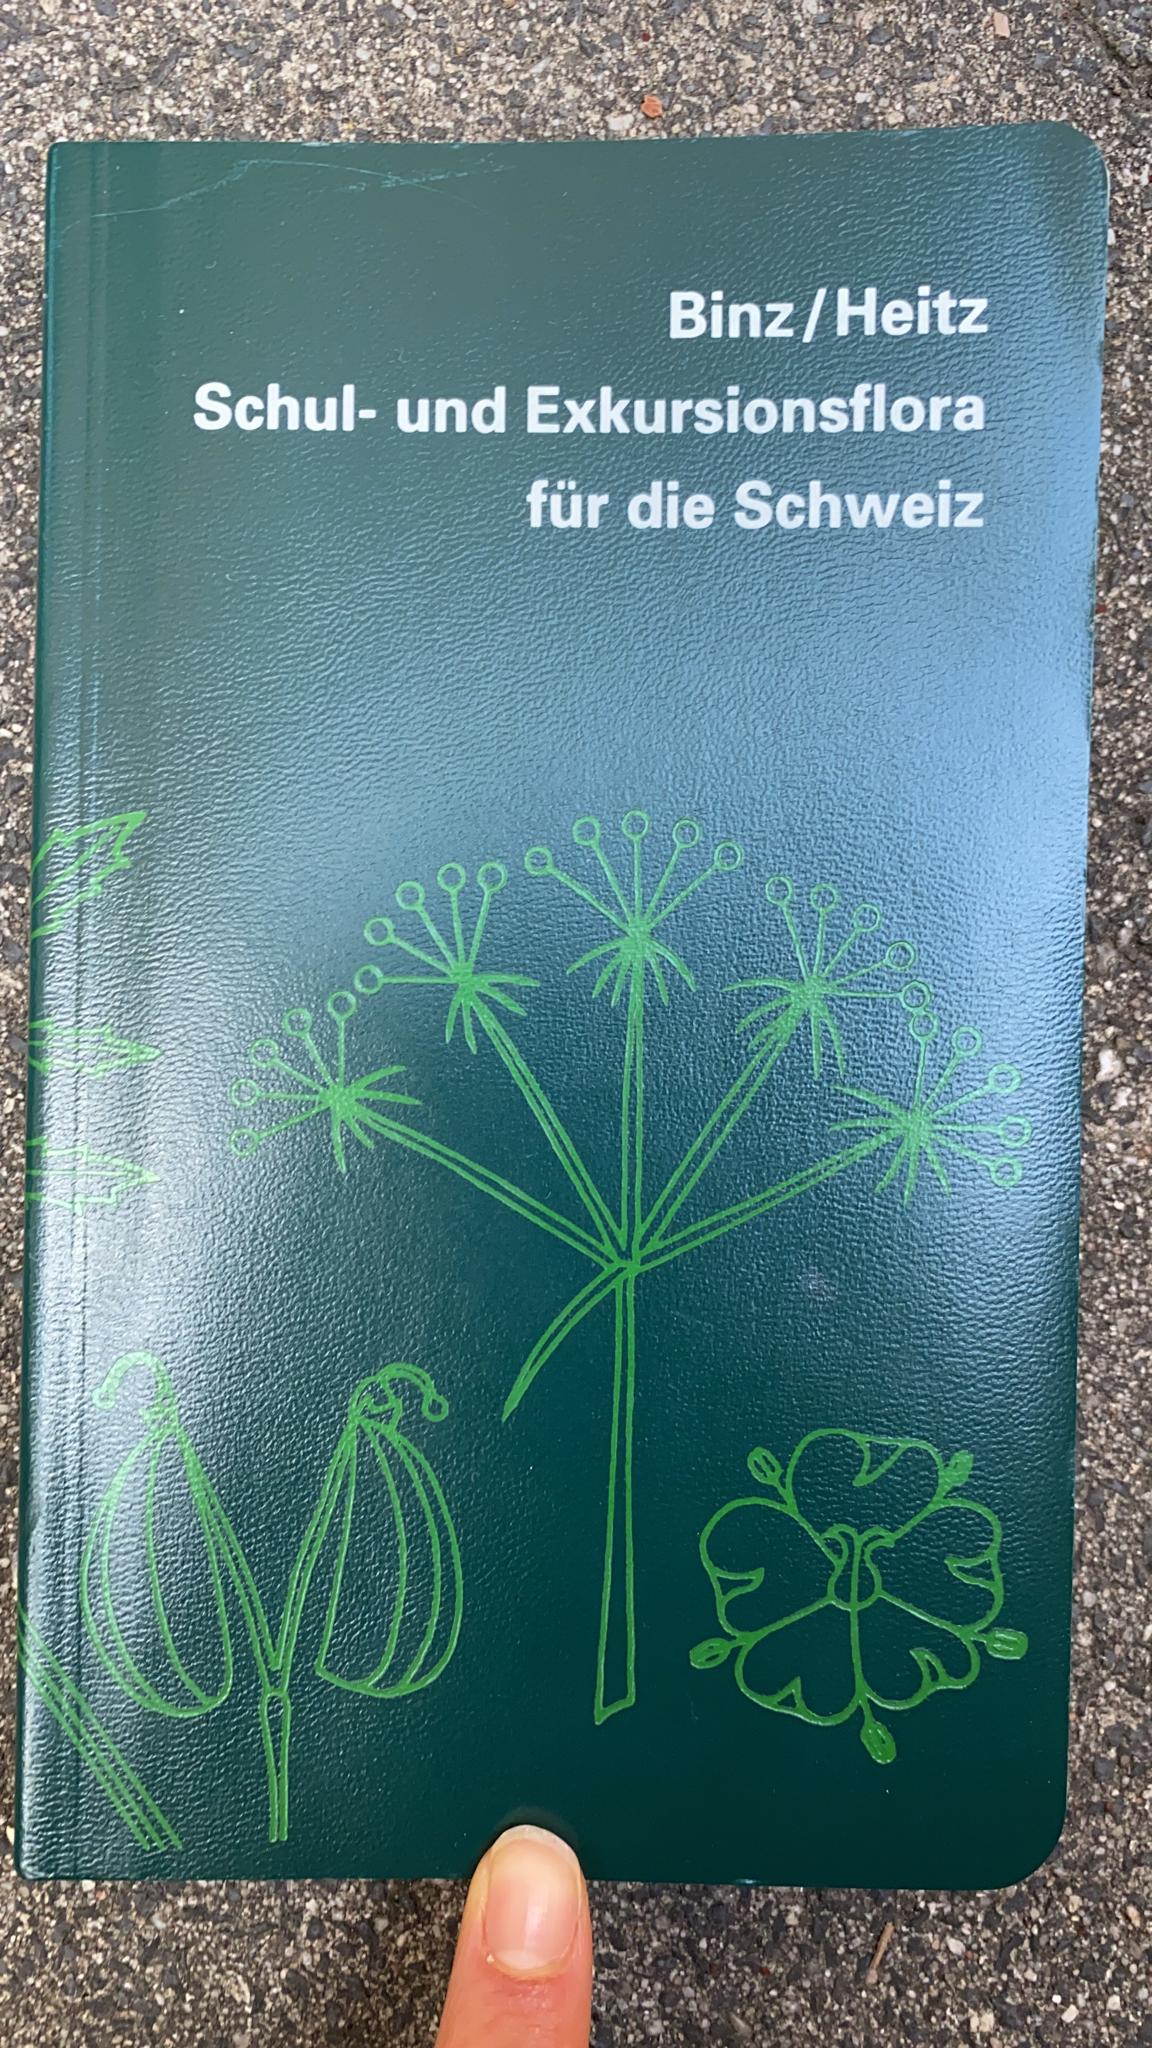 Anhang Binz_Heitz Schul- und Exkursionsflora für die Schweiz.jpg